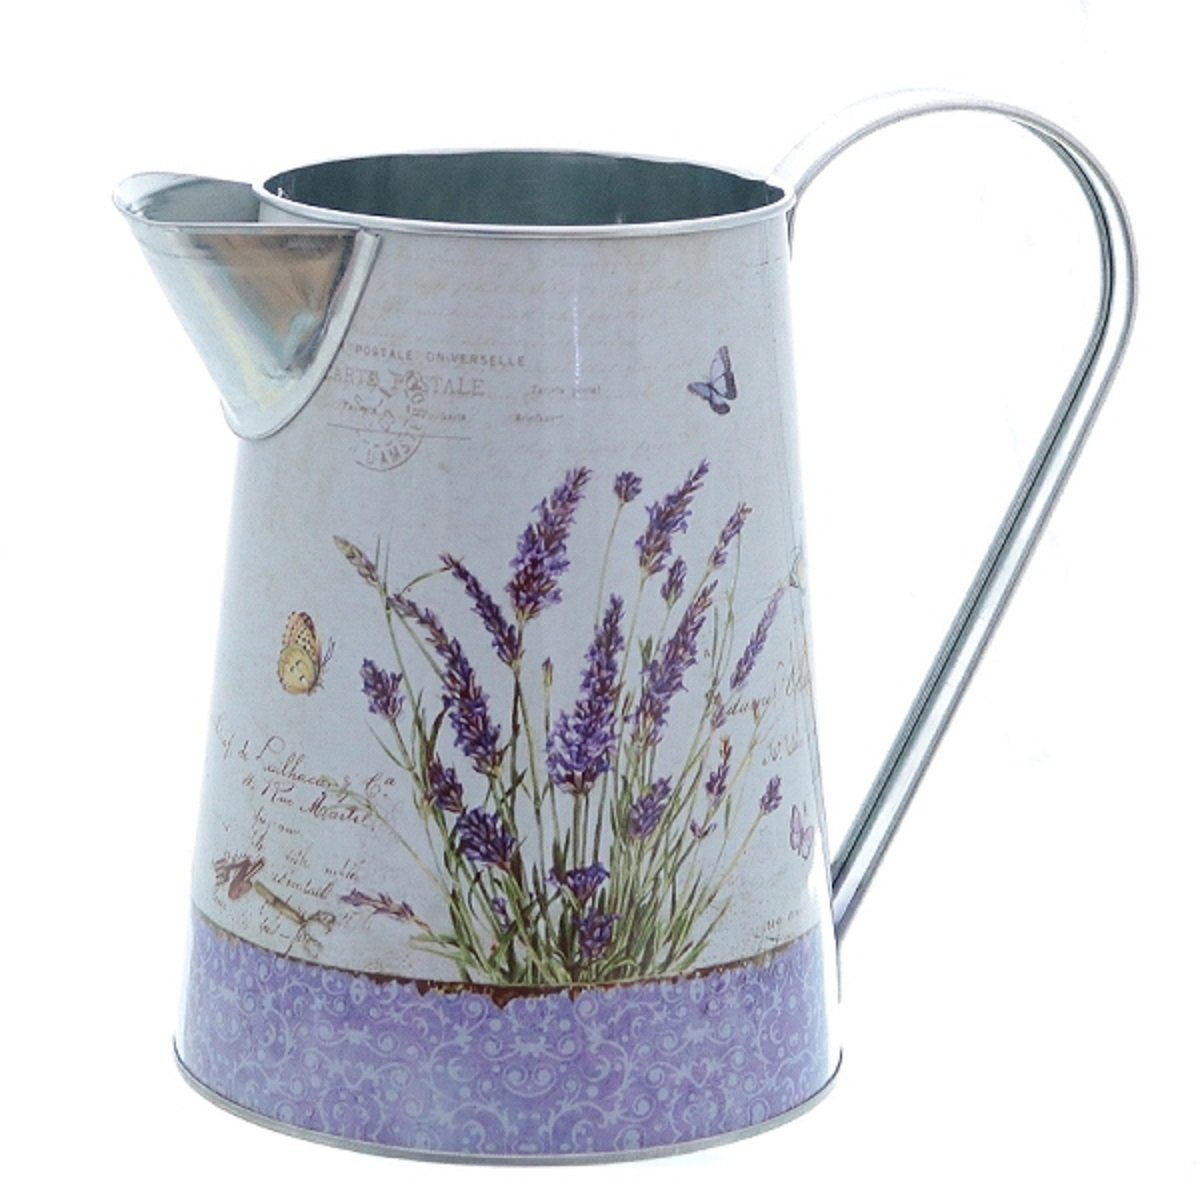 Neueste Ware eingetroffen Linoows Pflanzkübel Pflanzenkrug Lavendel, Garten Krug, Blumentopf Pflanztopf